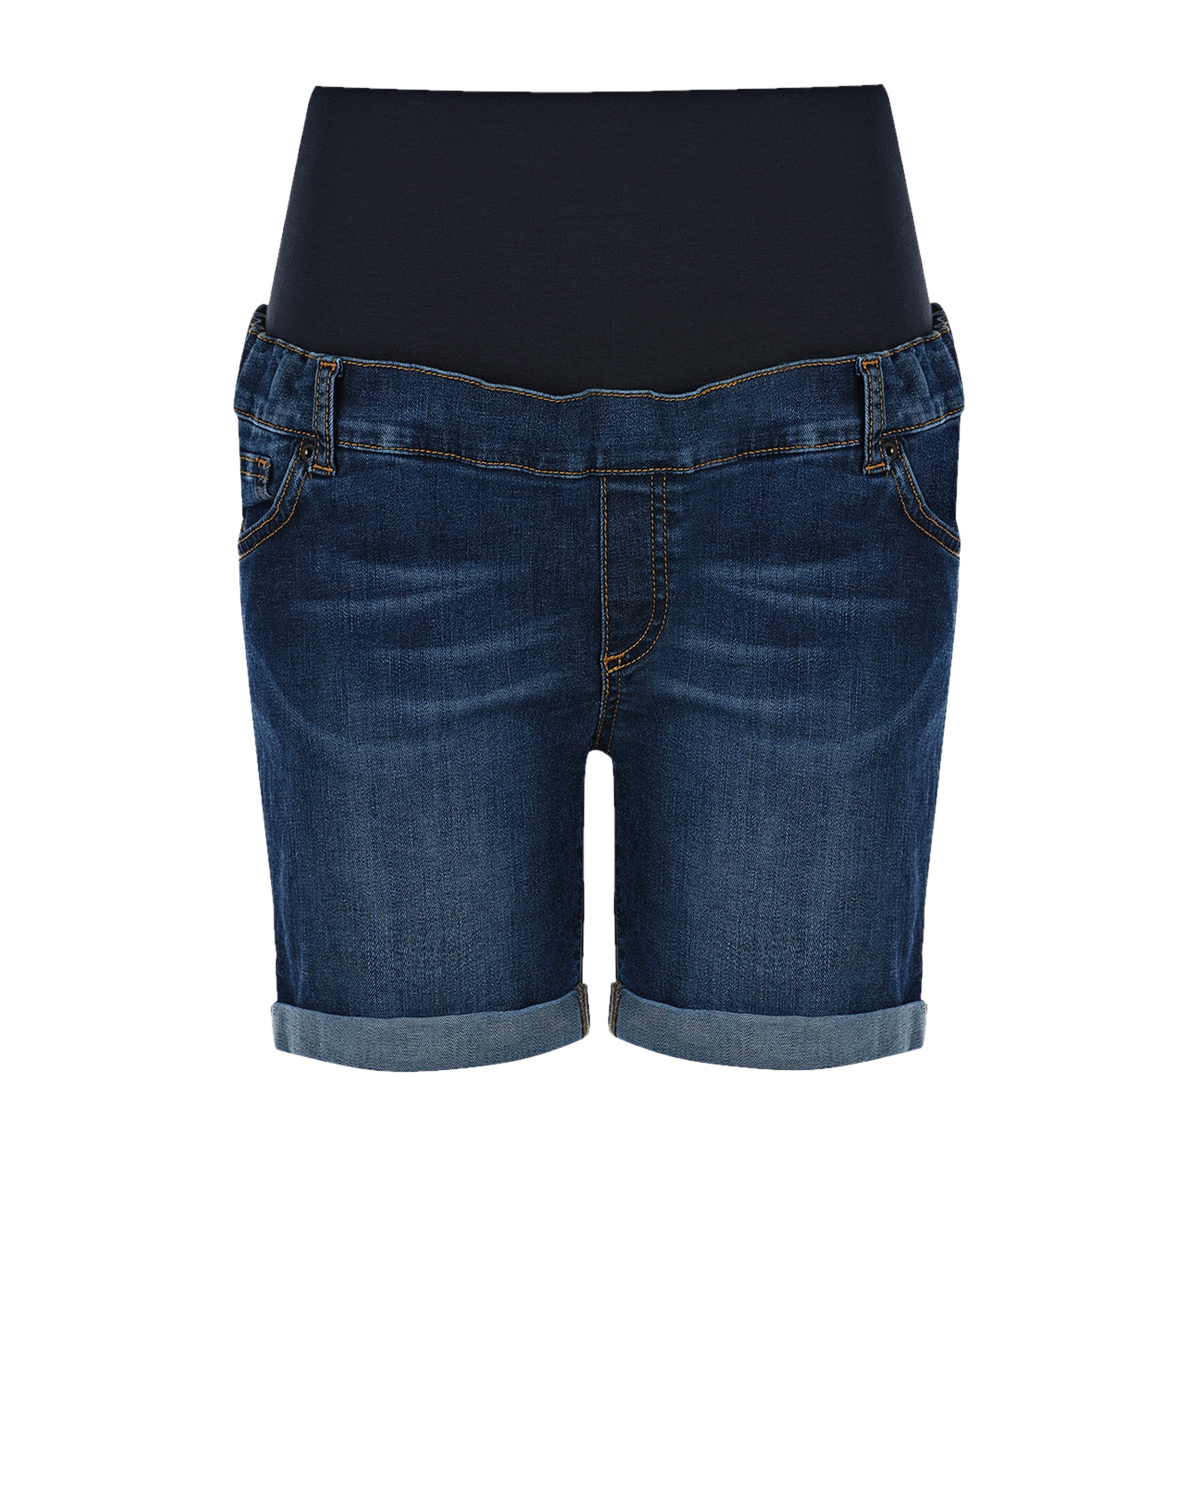 Джинсовые шорты для беременных Attesa, размер 40, цвет синий - фото 1